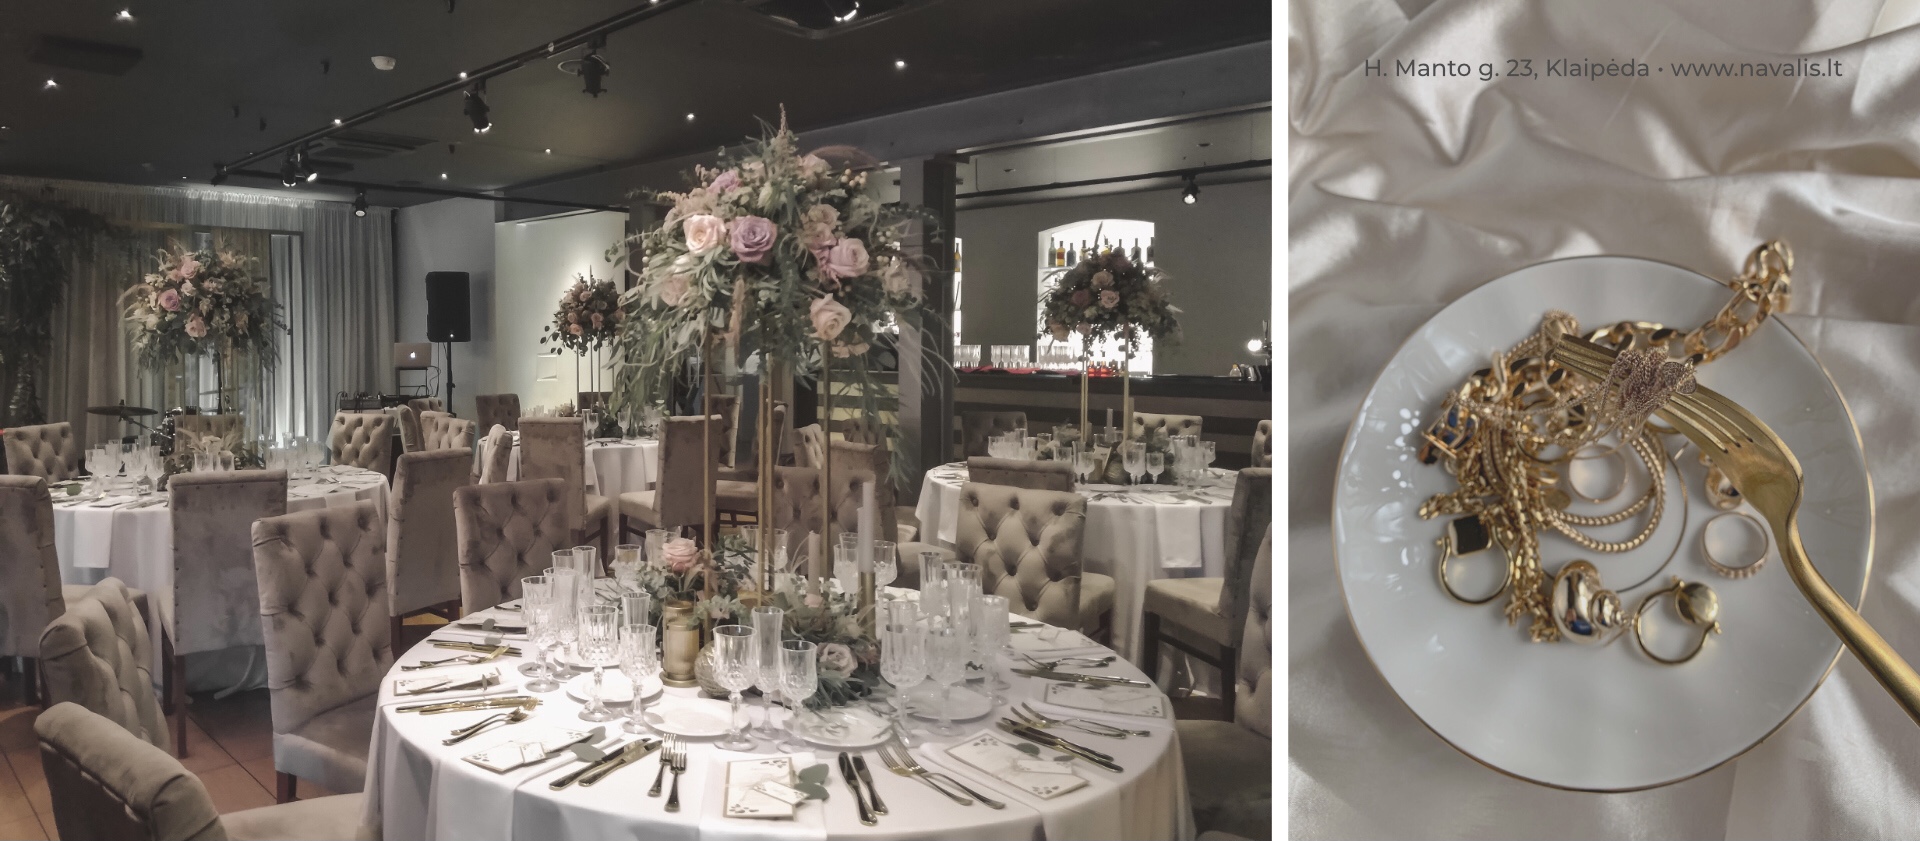 Event Celebration, Banquet, Wedding, Birthday | NAVALIS restaurant Klaipeda